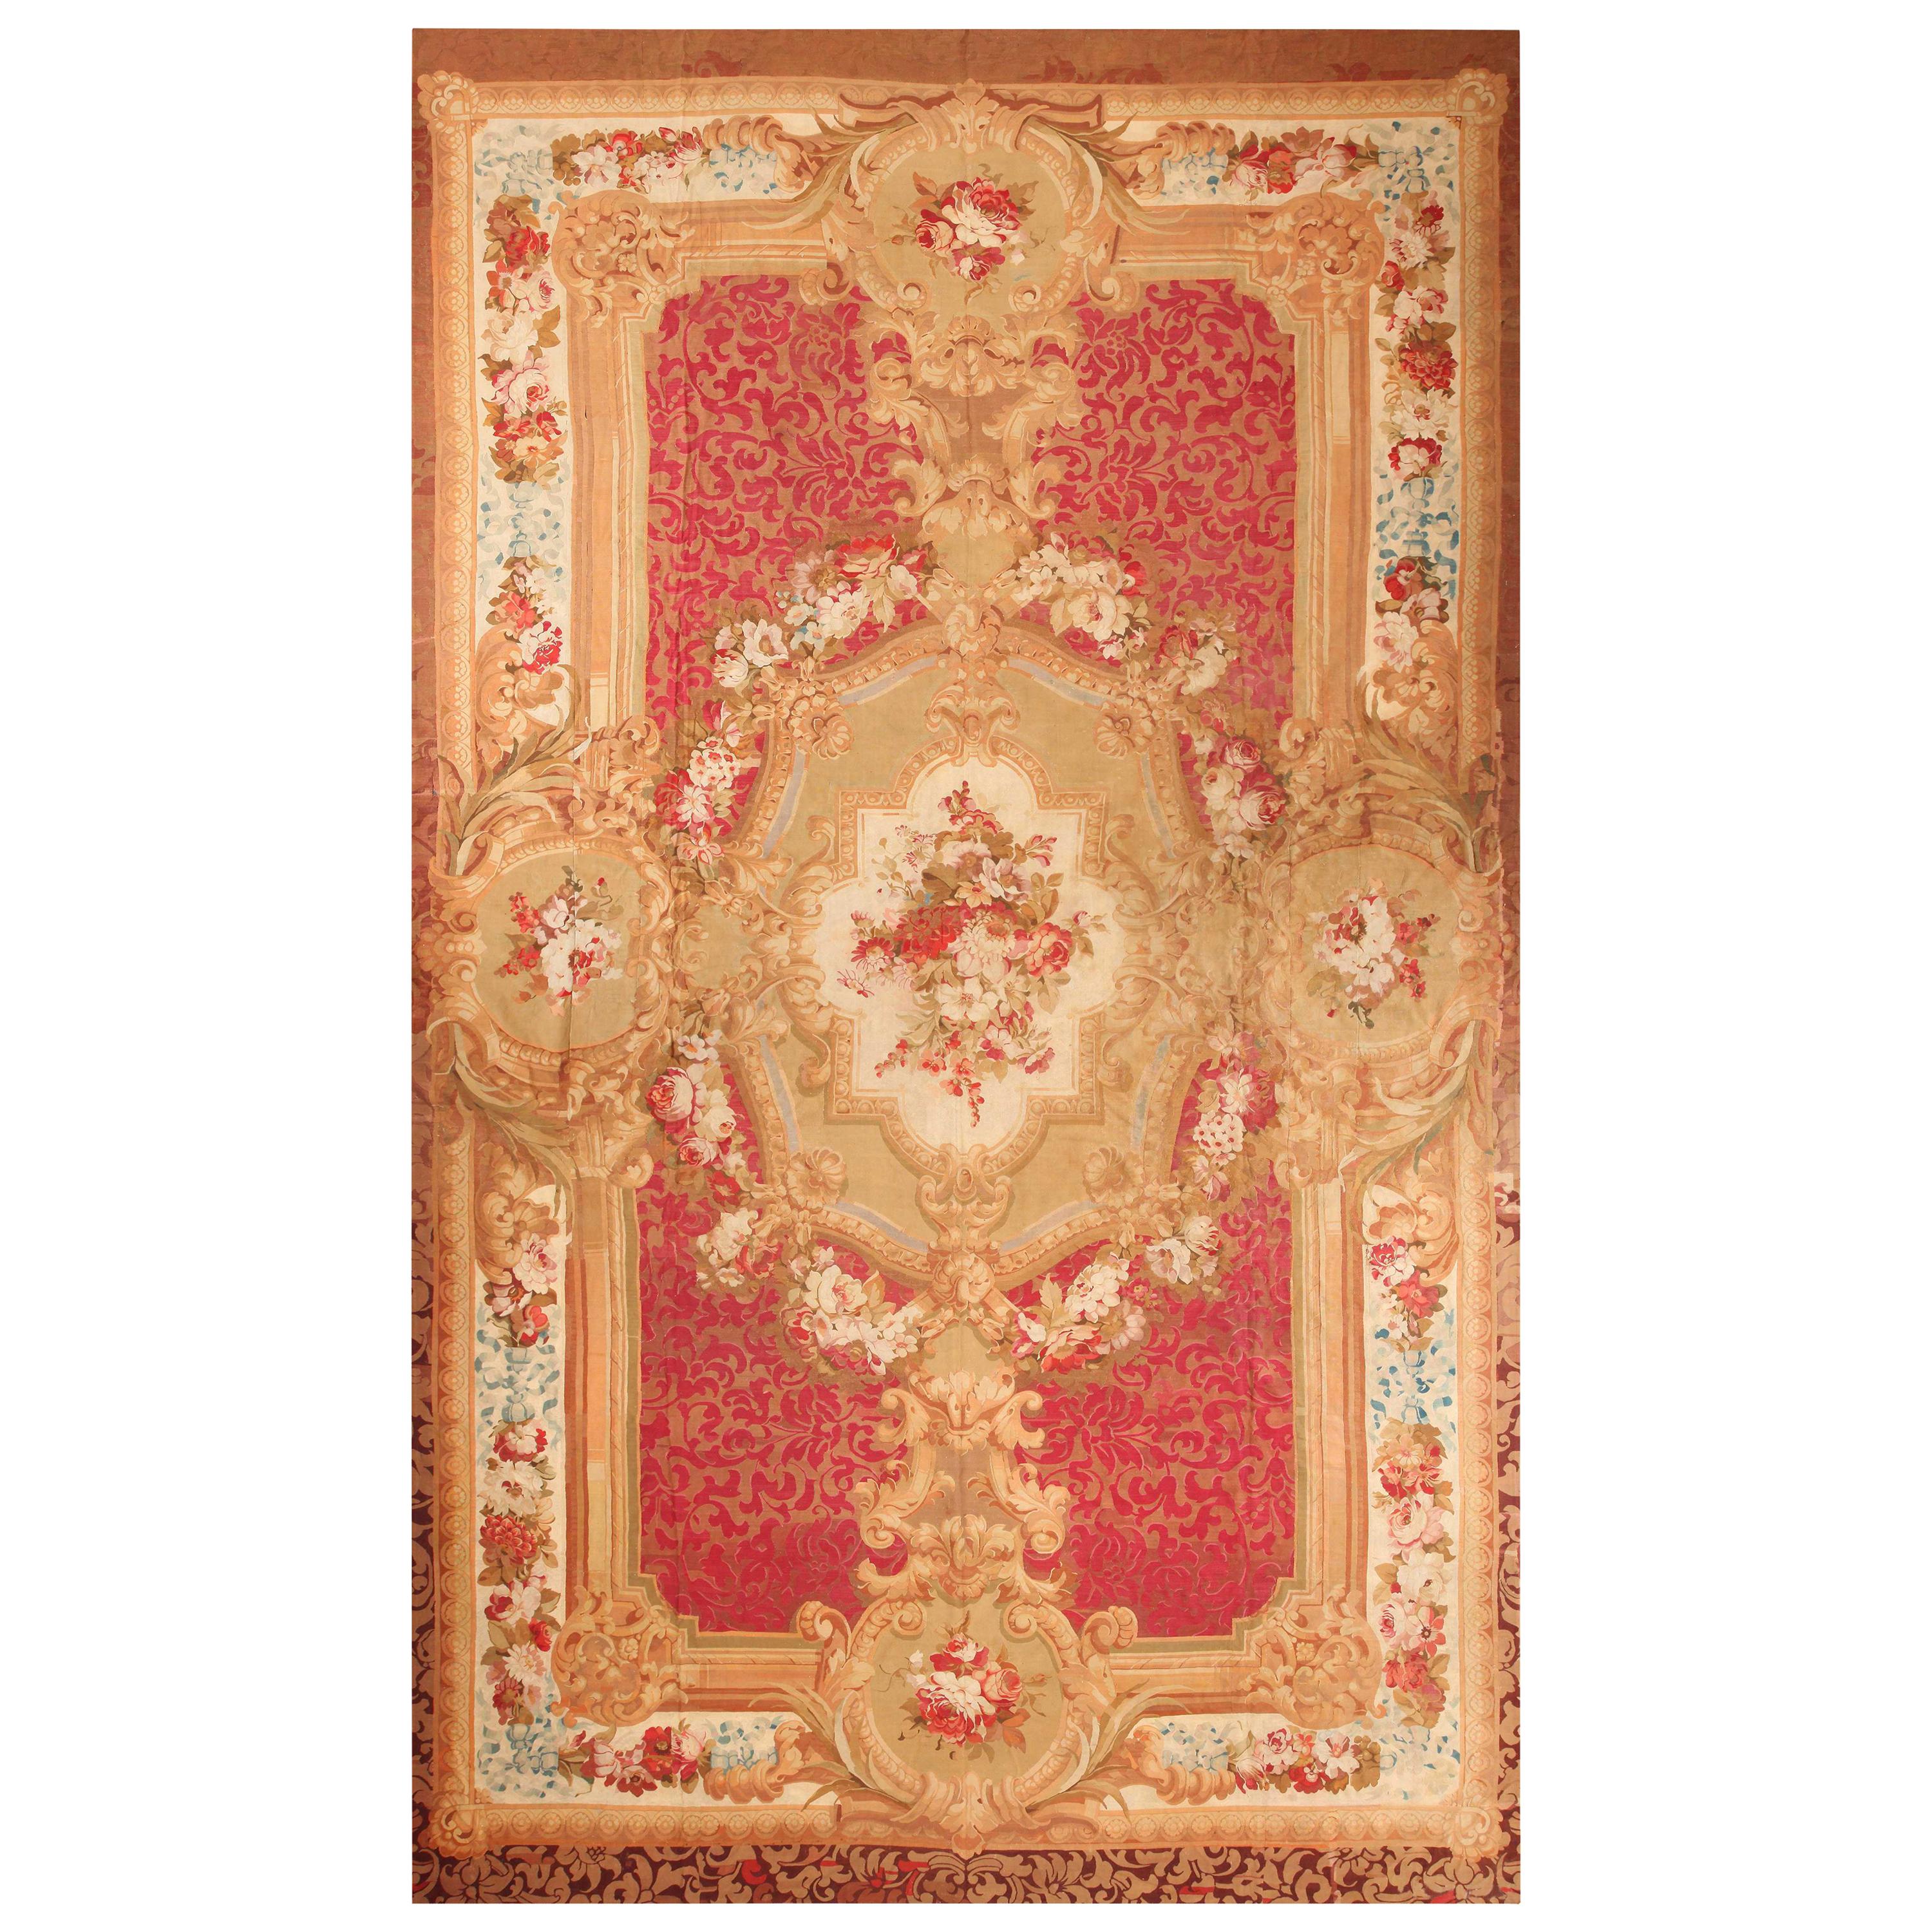 Antiker französischer Aubusson-Teppich. Größe: 16 Fuß x 26 Fuß 4 Zoll